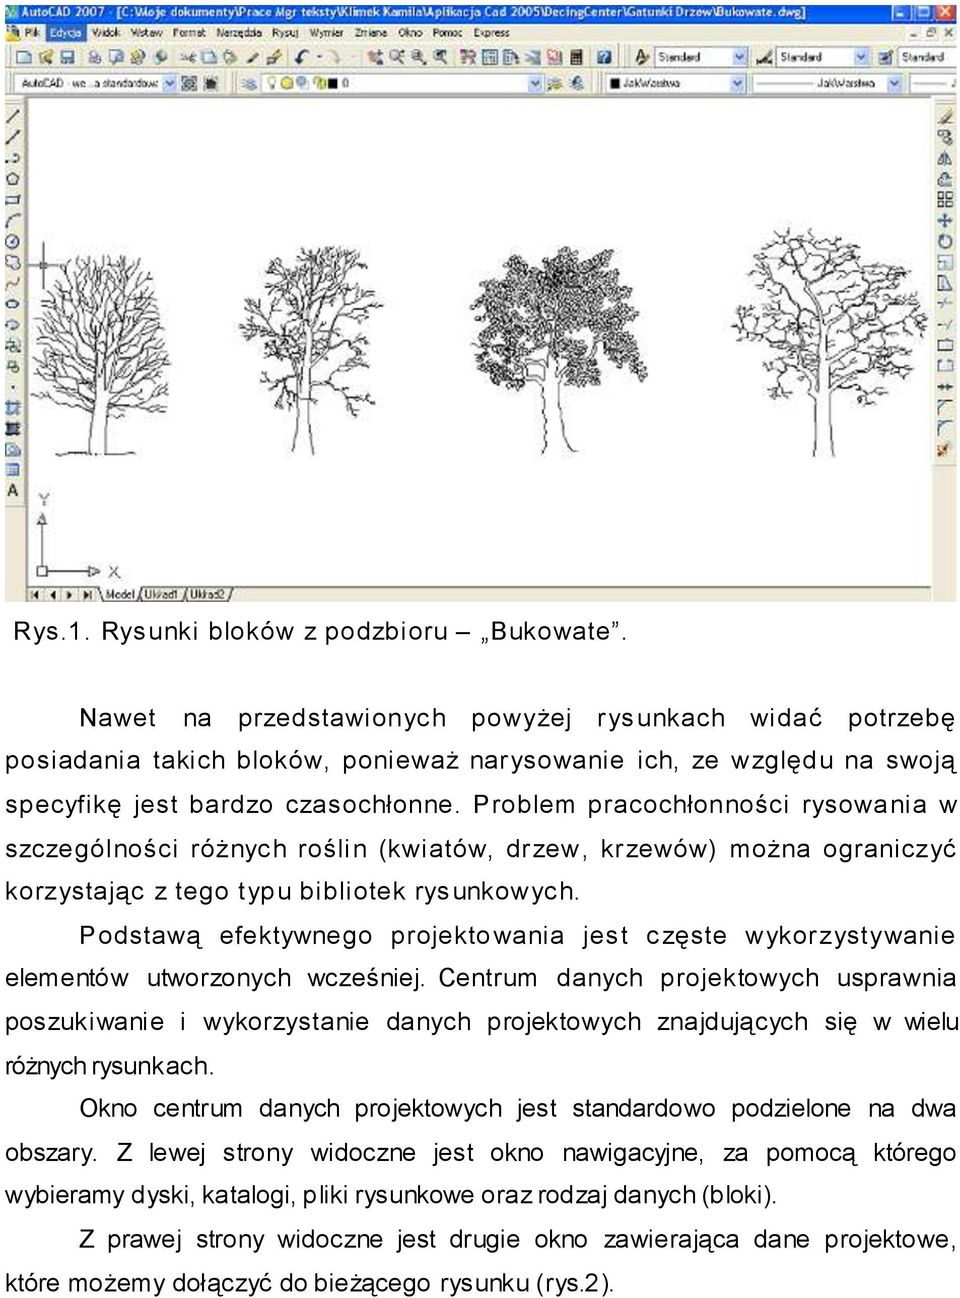 Problem pracochłonności rysowania w szczególności różnych roślin (kwiatów, drzew, krzewów) można ograniczyć korzystając z tego typu bibliotek rysunkowych.